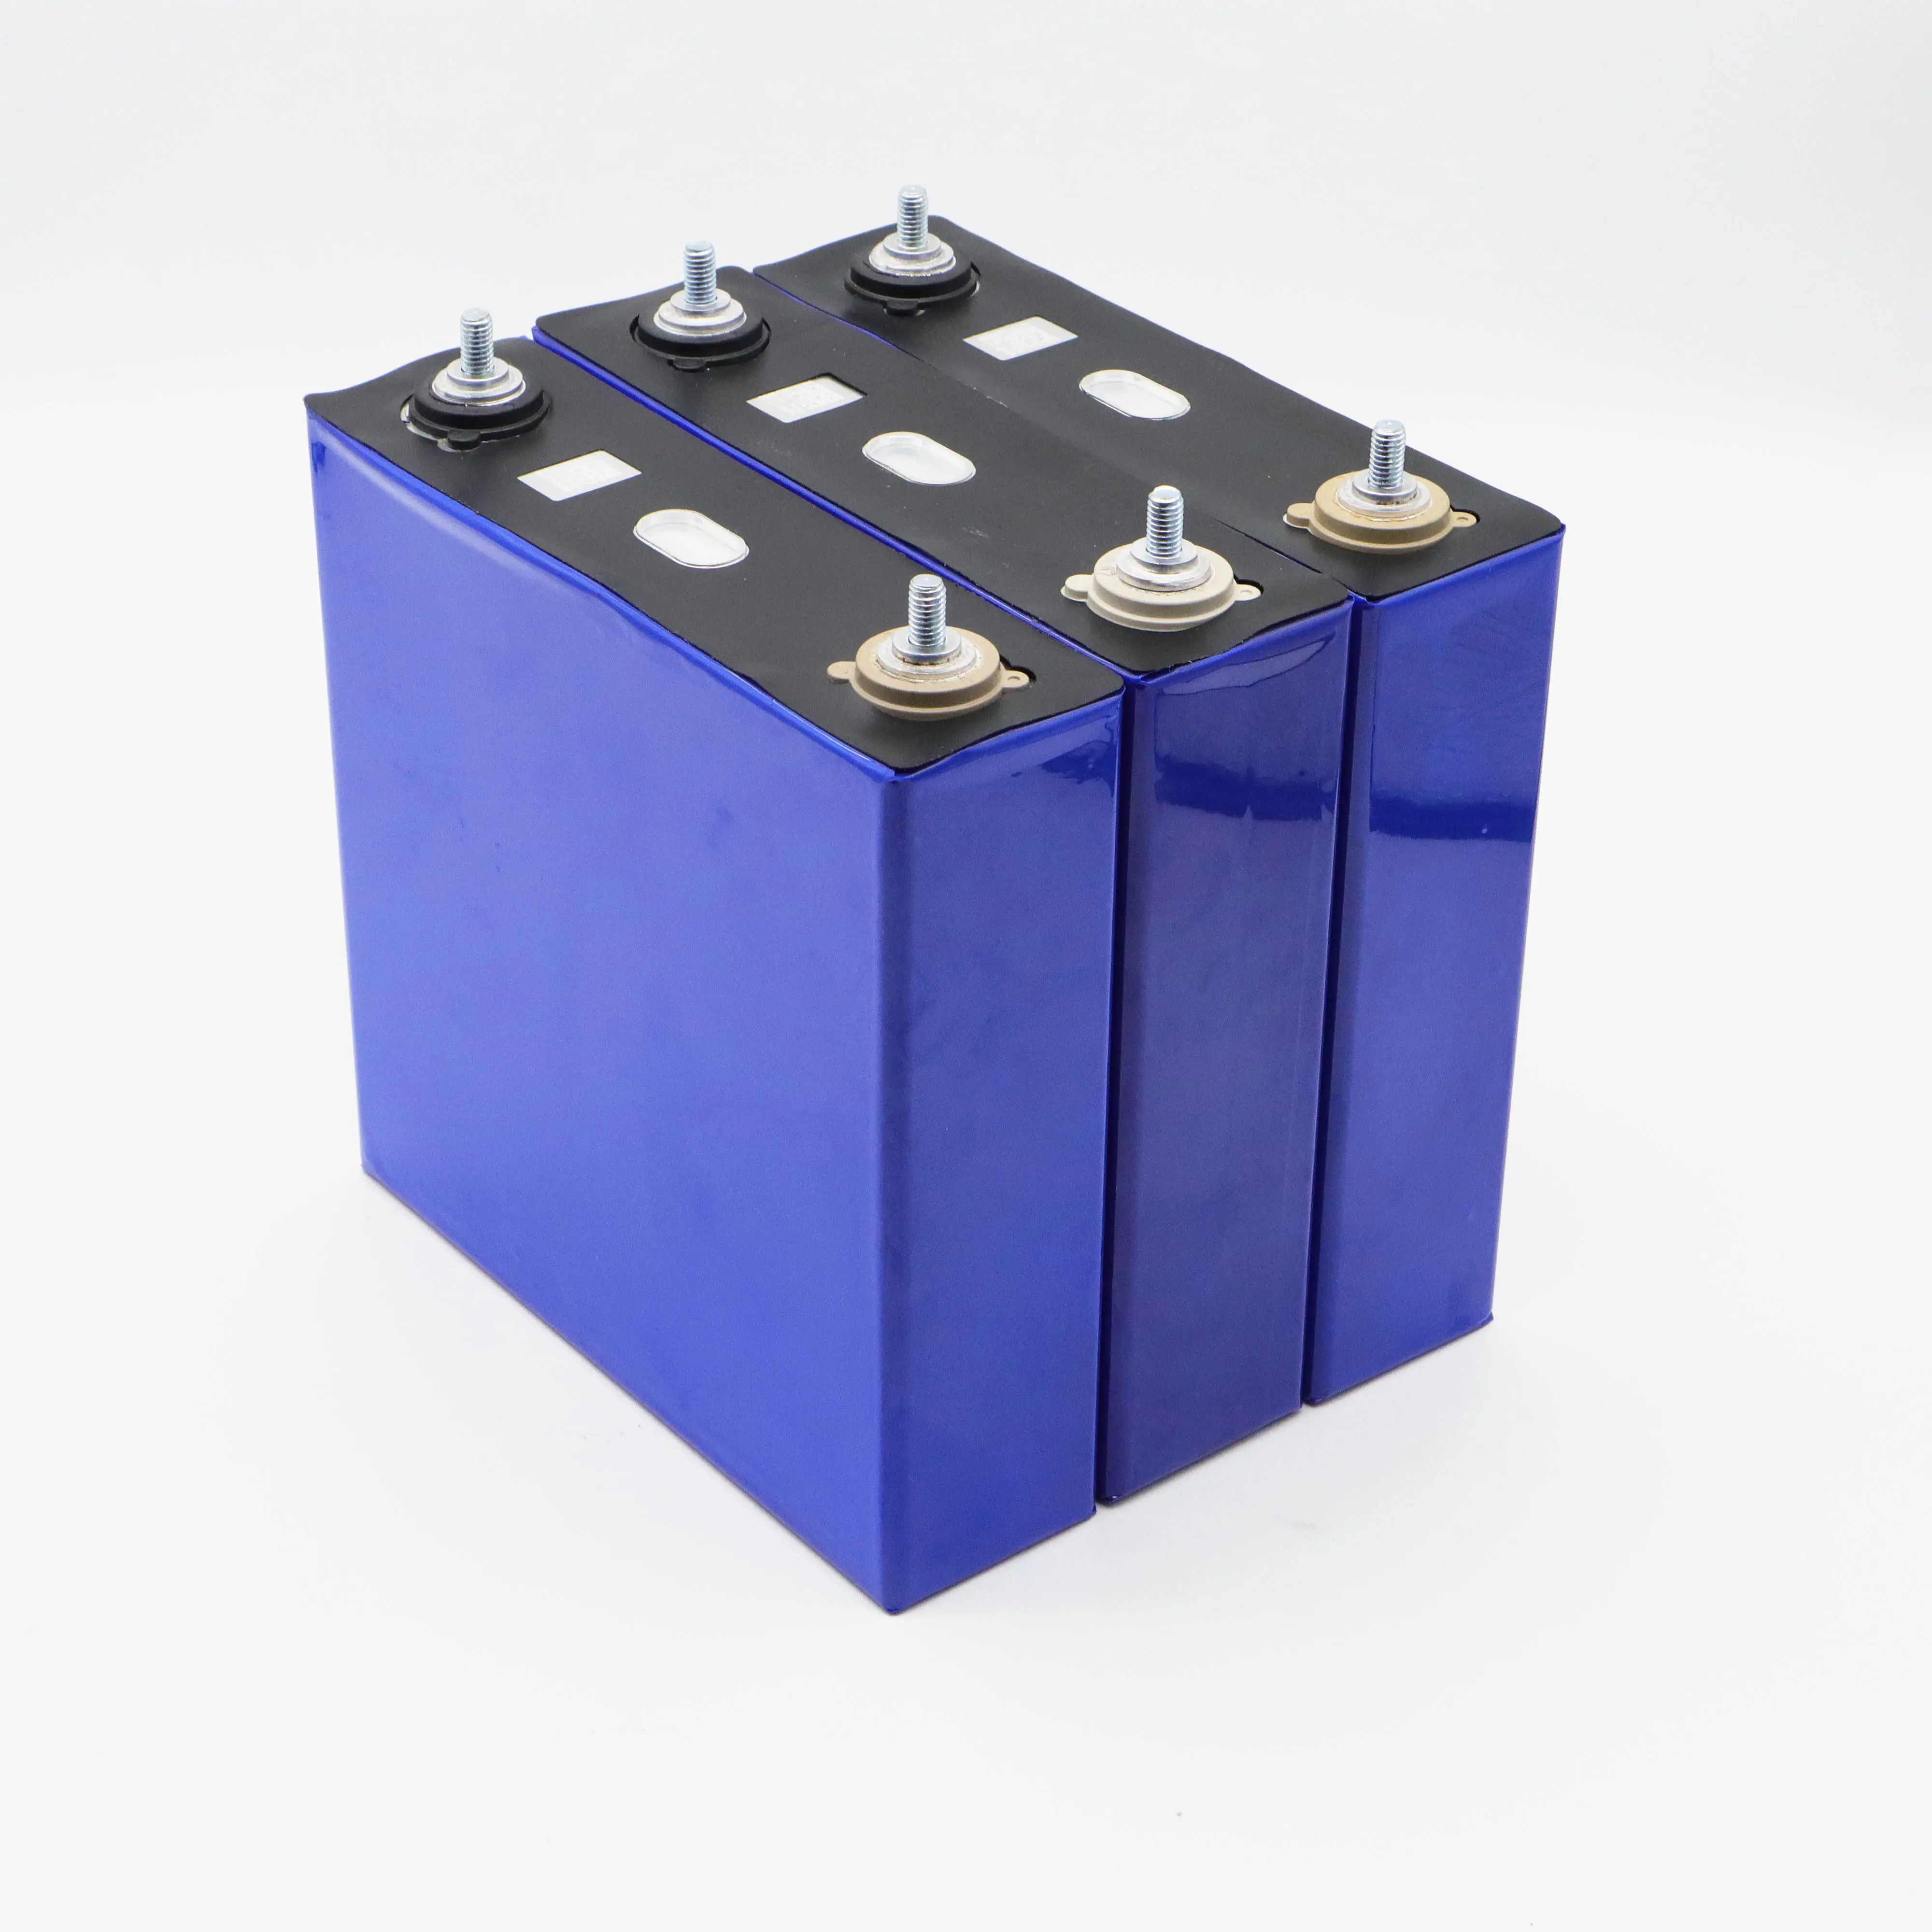 BASEN-Celda de batería lifepo4 para almacenamiento de energía solar, Pila de Iones de litio de 3,2 v y 3,2 Ah